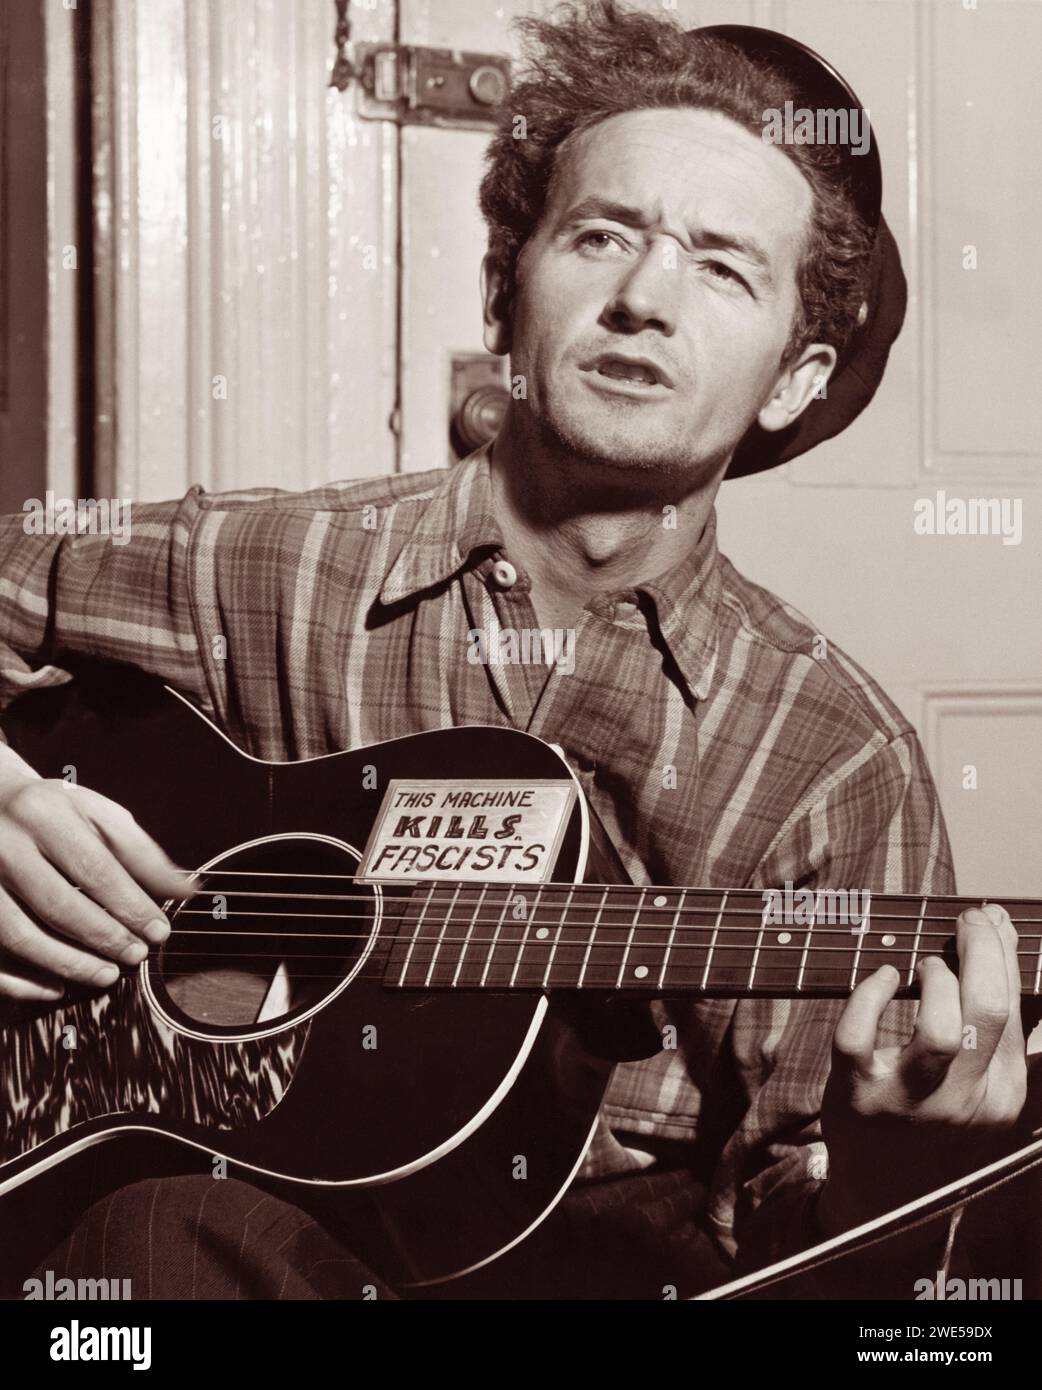 Woody Guthrie (1912-1967), musicien folklorique américain originaire de l'Oklahoma dont le travail s'est concentré sur les thèmes du socialisme américain et de l'antifascisme. Guthrie est peut-être mieux connu pour la chanson This Land is Your Land. Banque D'Images